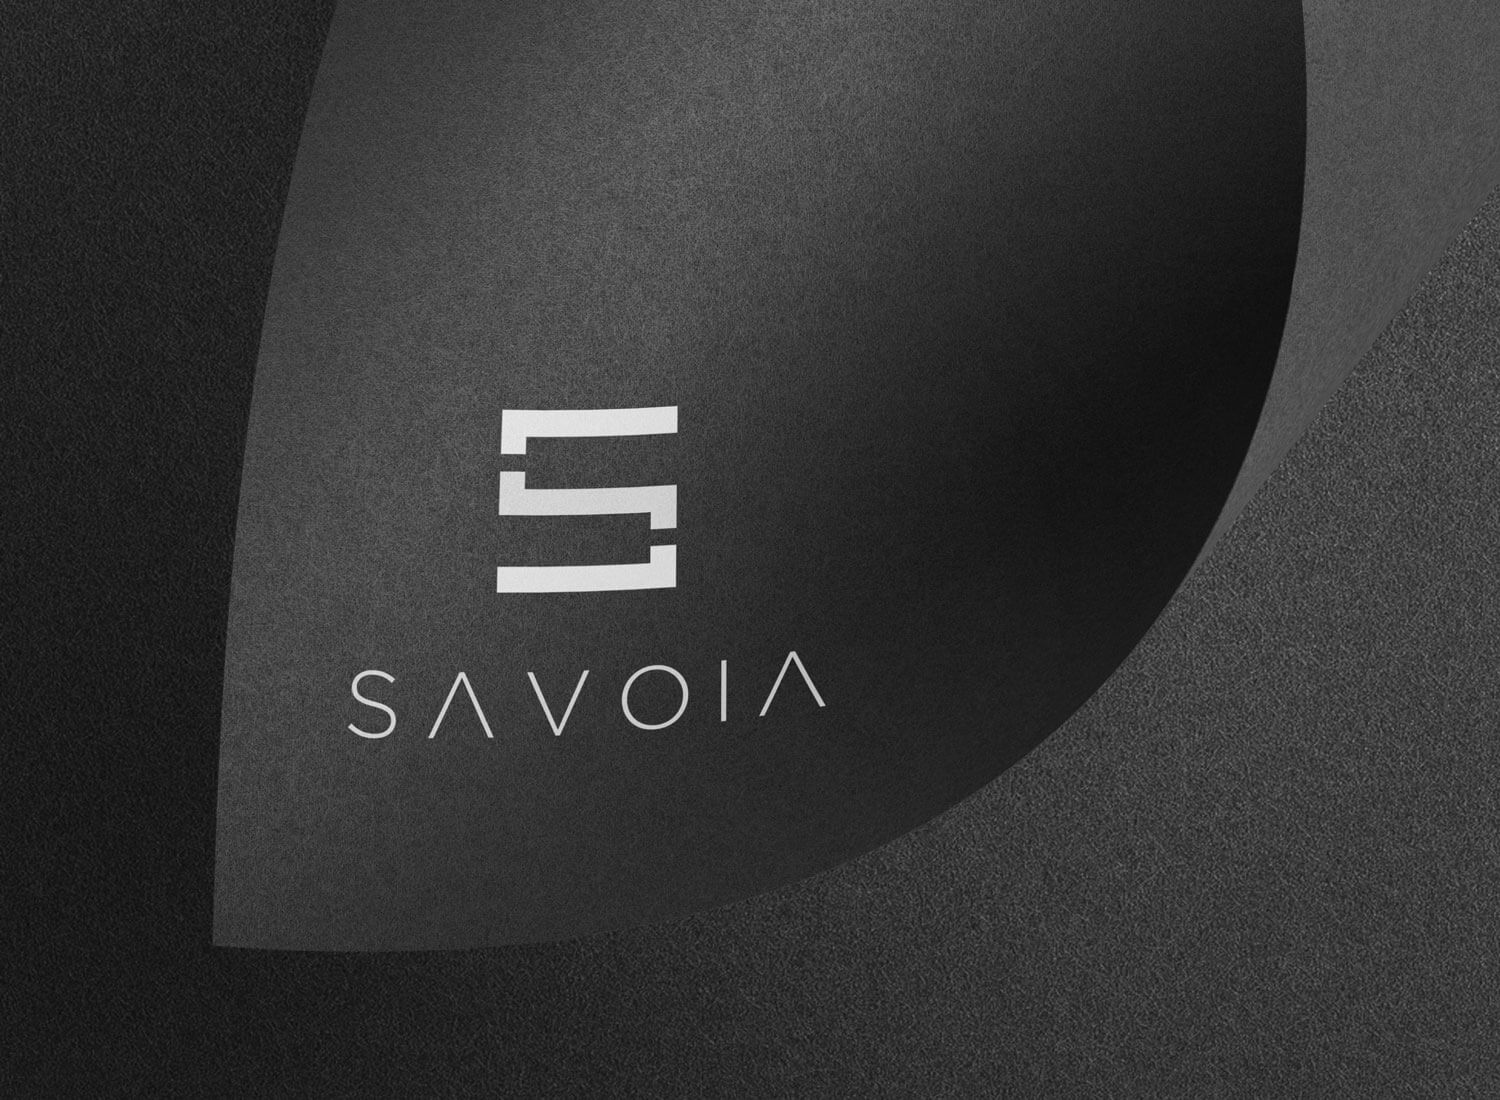 Logo e brand identity di Savoia realizzato da SEBA! grafico di Gravellona Toce nel VCO di marchio su cartoncino nero